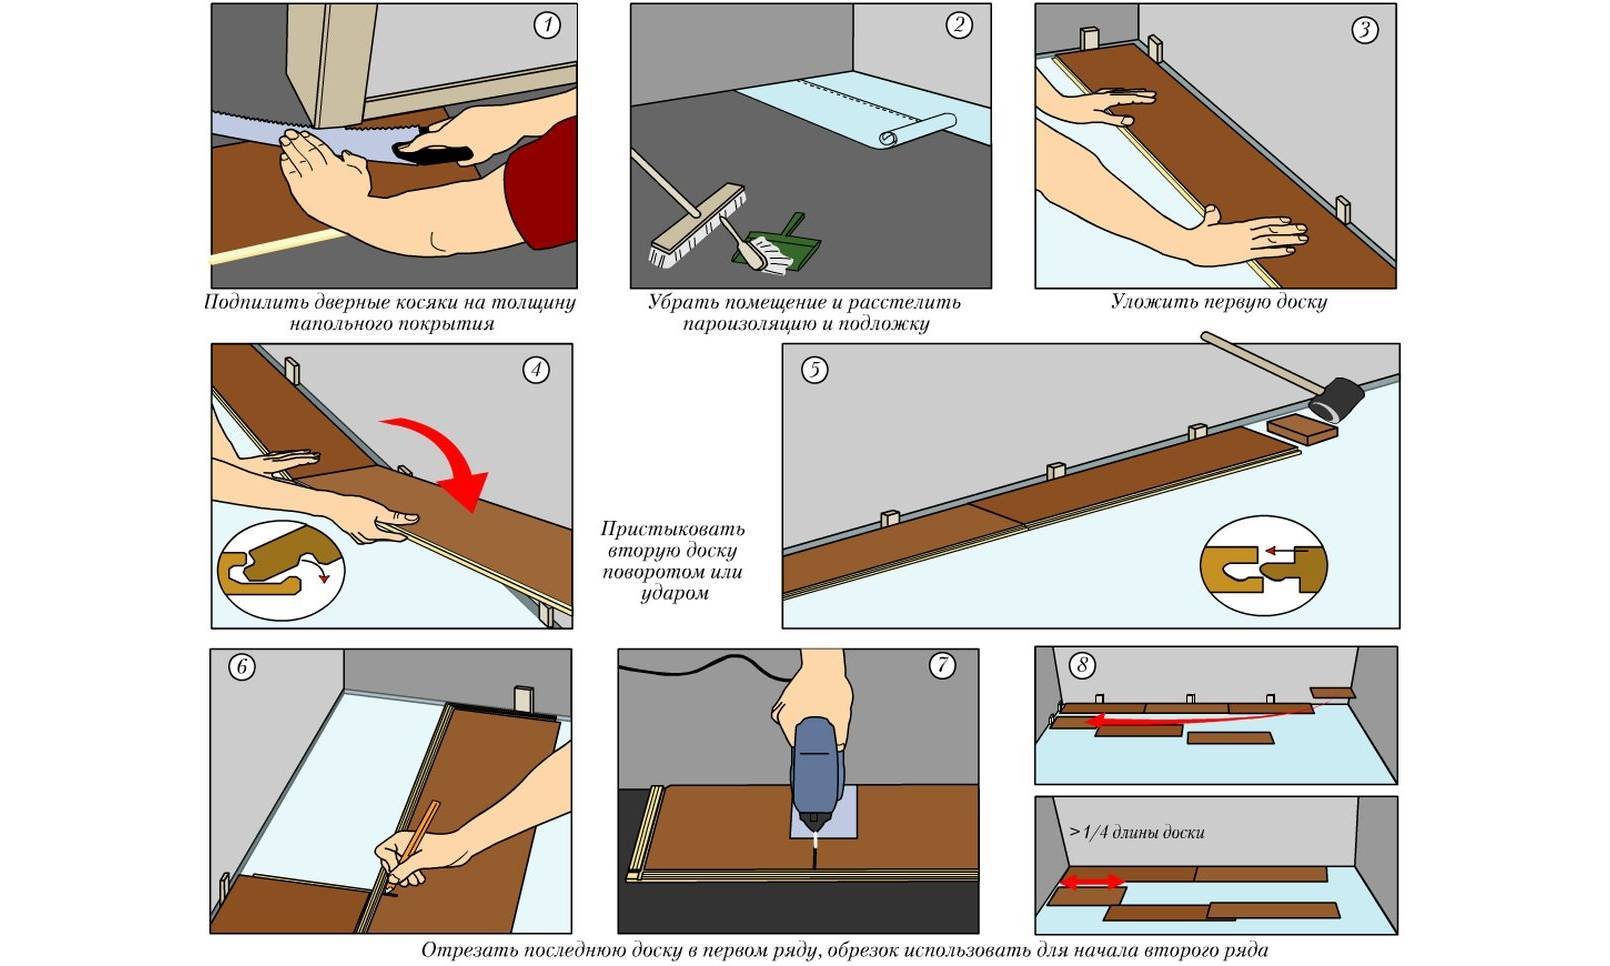 Укладка линолеума своими руками в домашних условиях: пошаговая инструкция с фото и видео